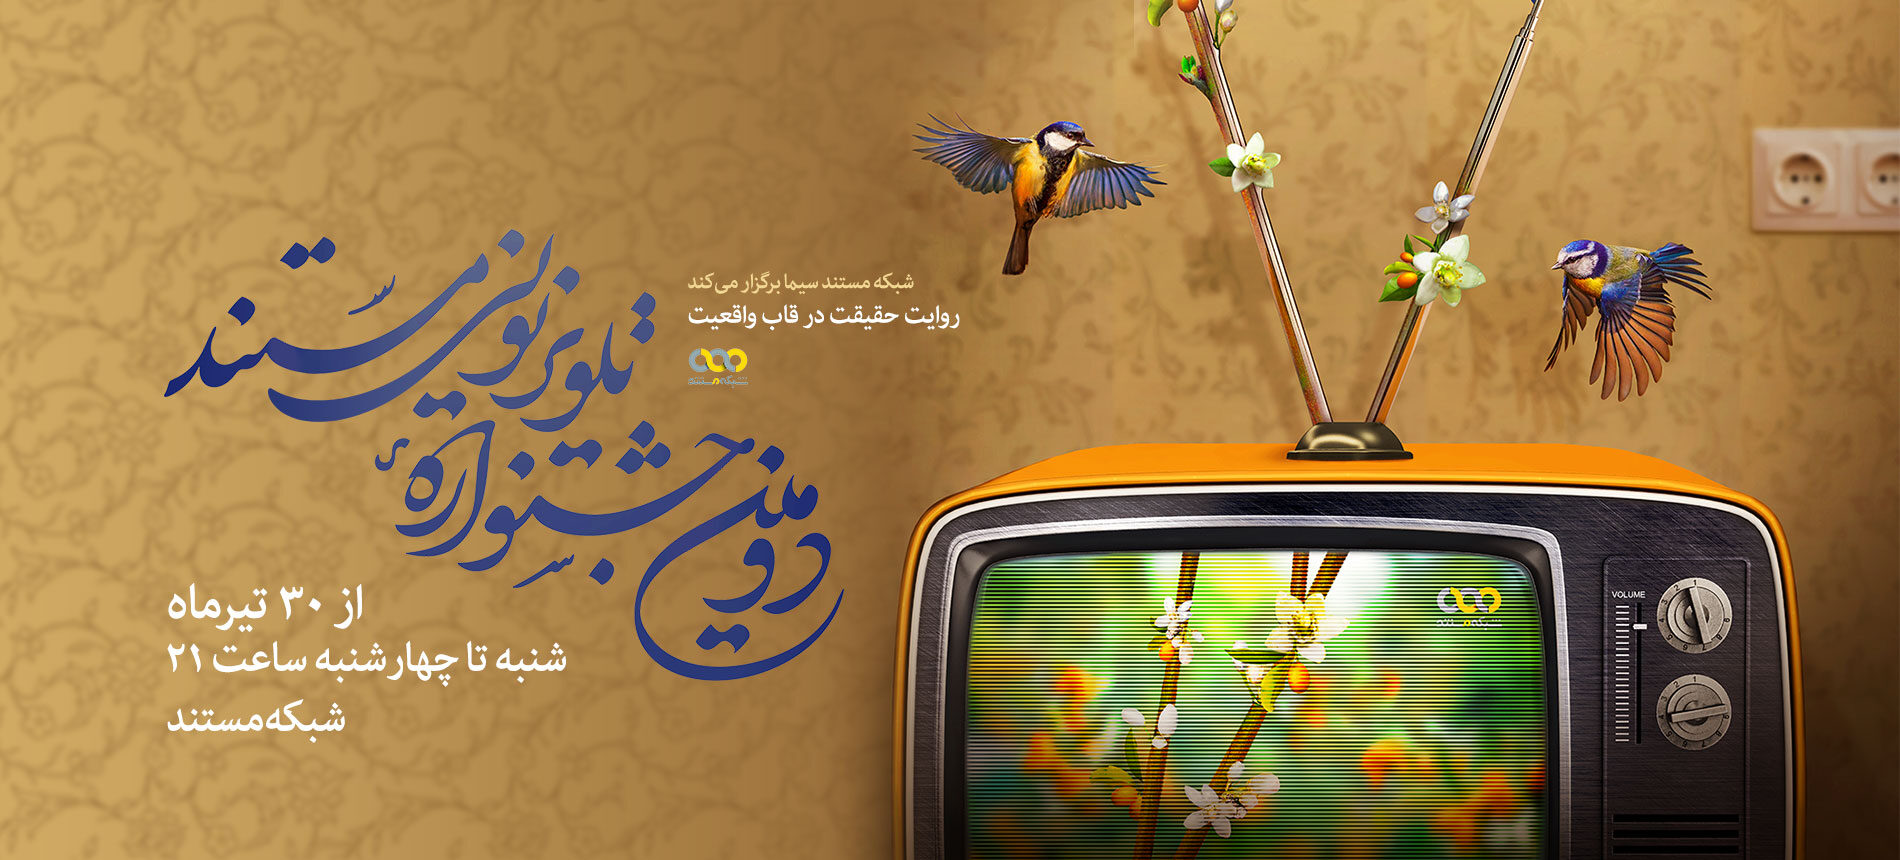 آغاز دومین جشنواره تلویزیونی مستند از 30 تیرماه